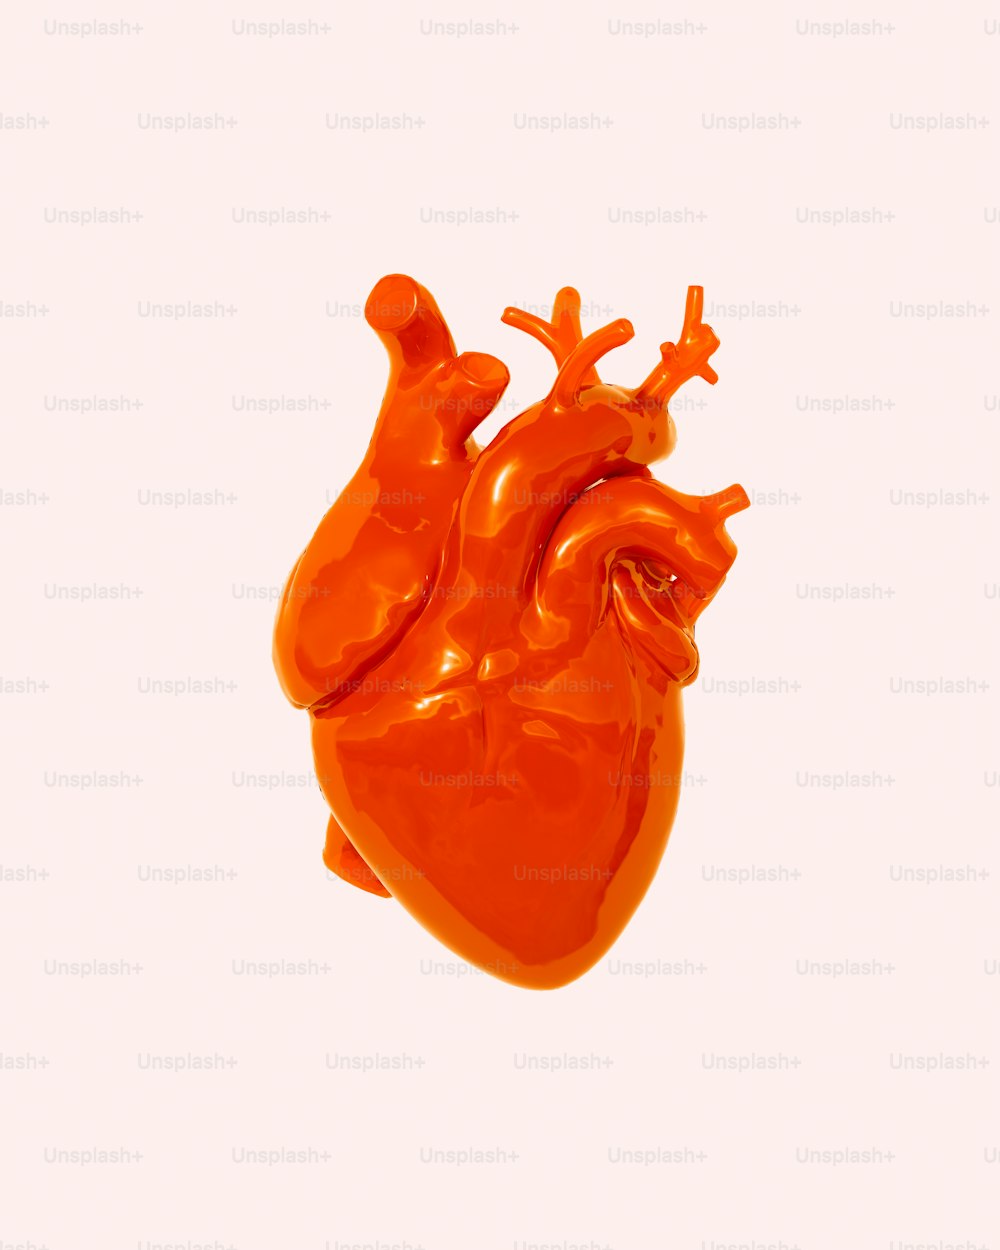 un objet orange en forme de cœur flottant dans l’air